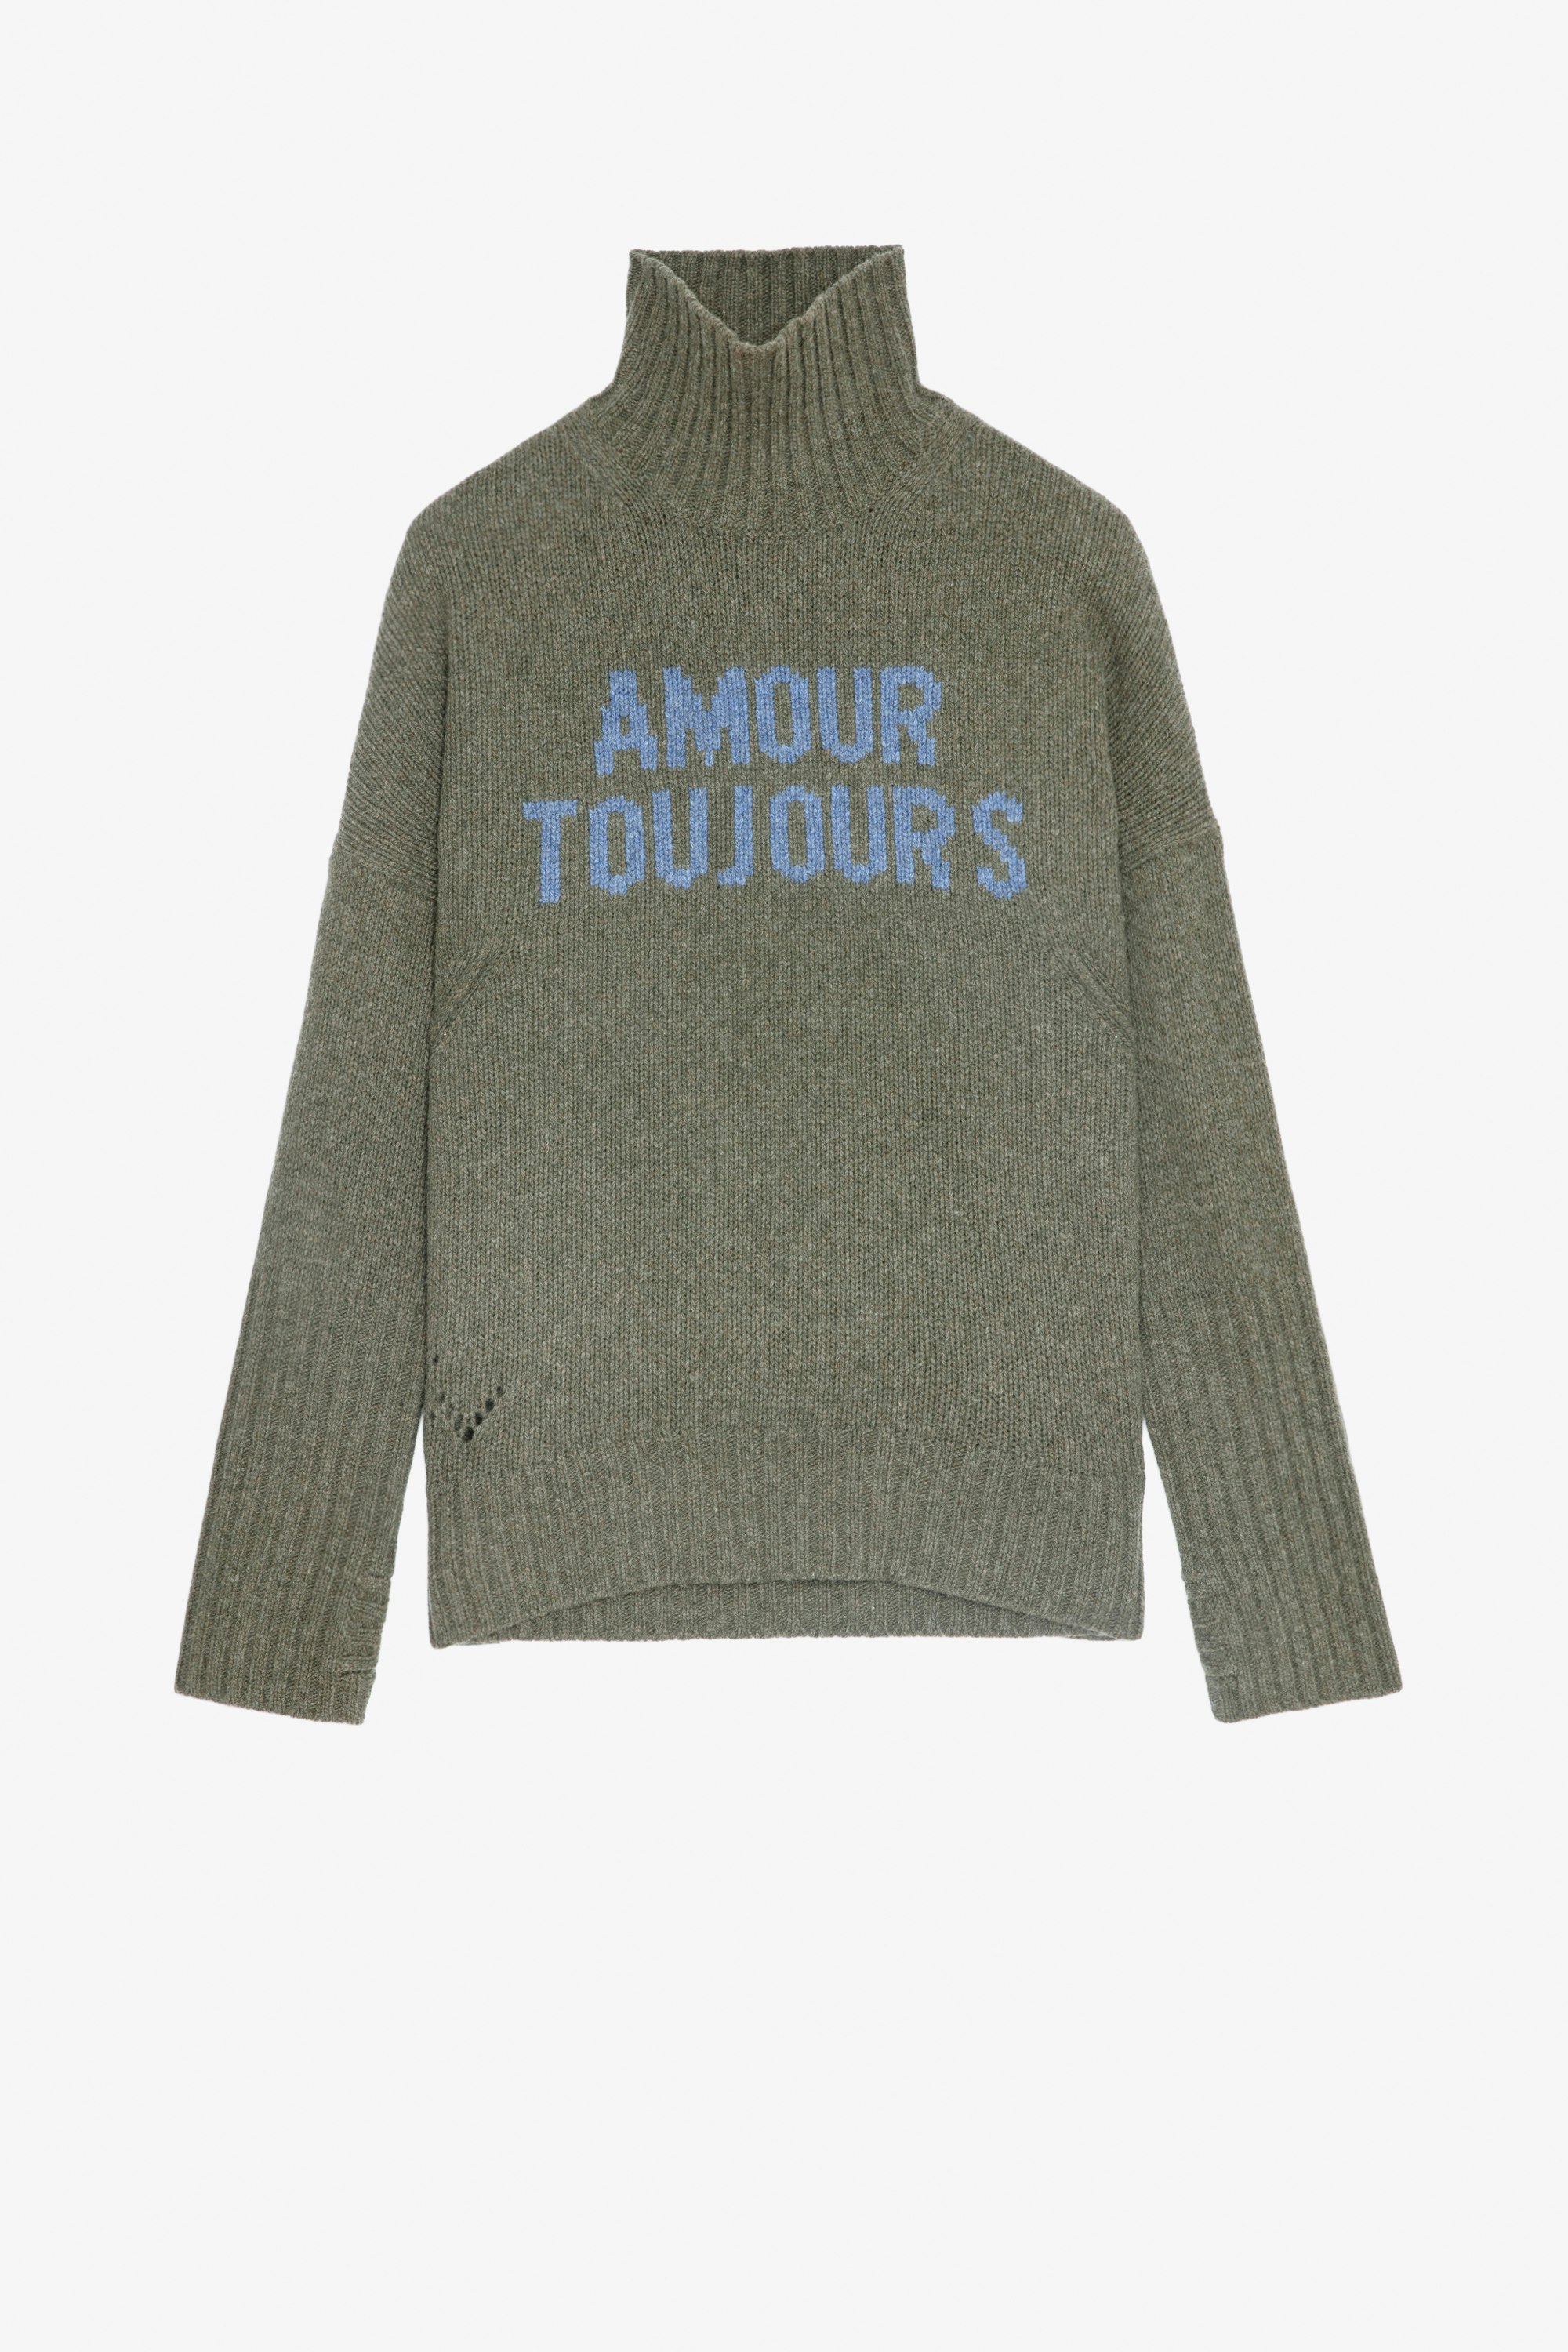 Jersey Alma Jersey caqui de lana merina para mujer con cuello alto y mensaje «Amour Toujours»